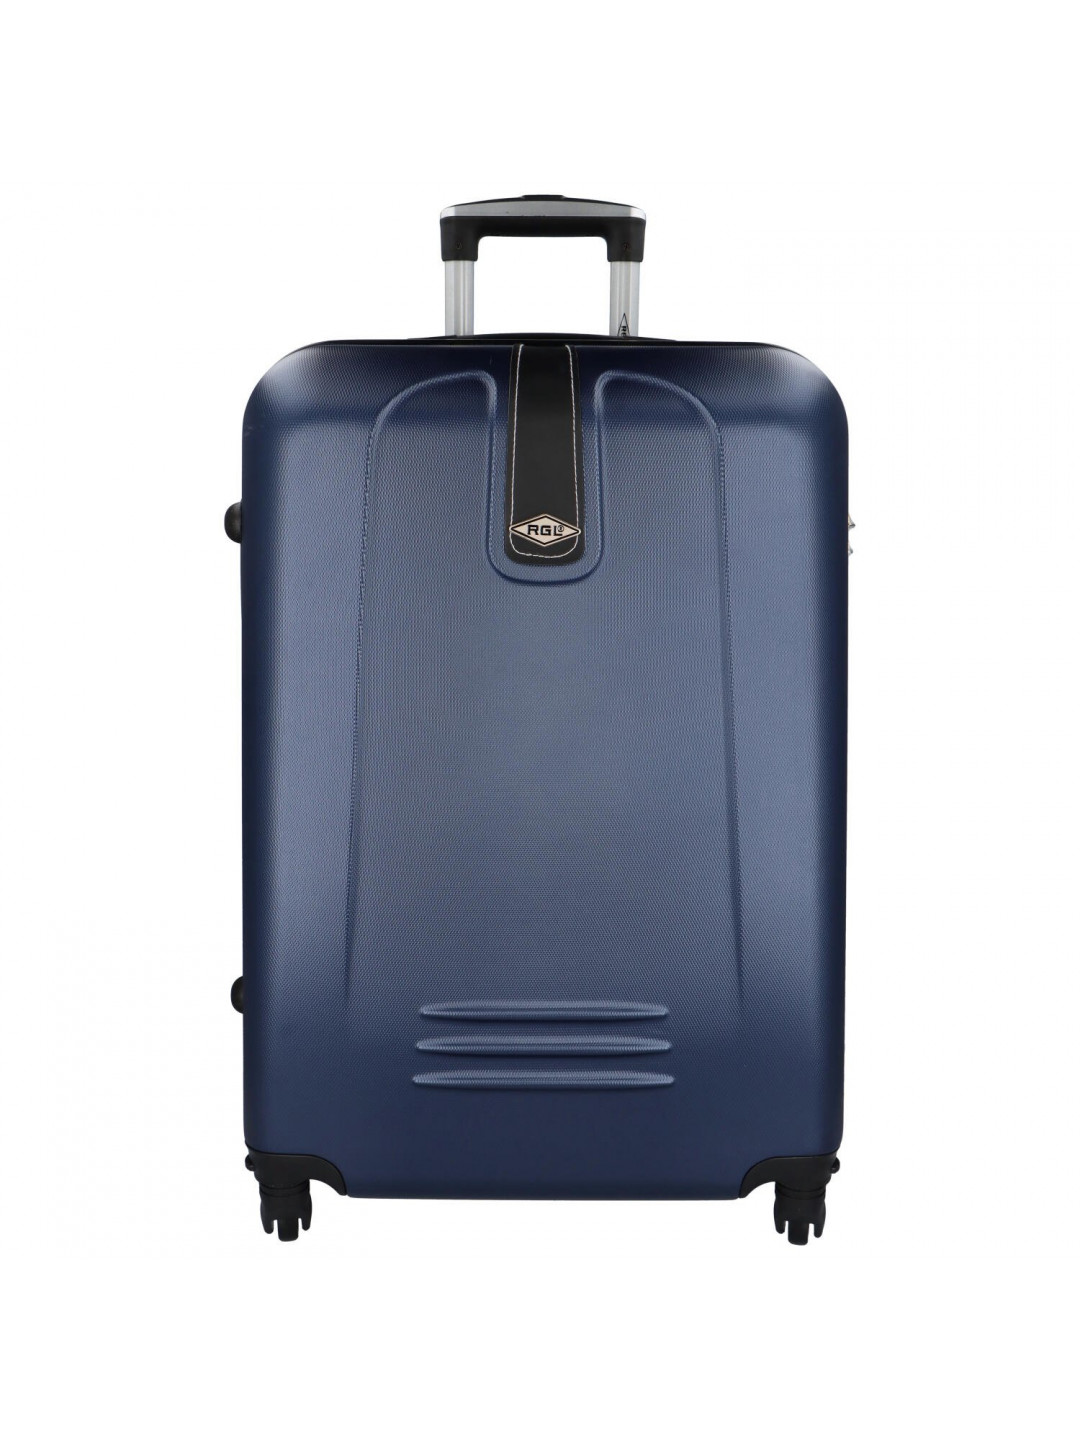 Plastový cestovní kufr Peek tmavě modrý XL